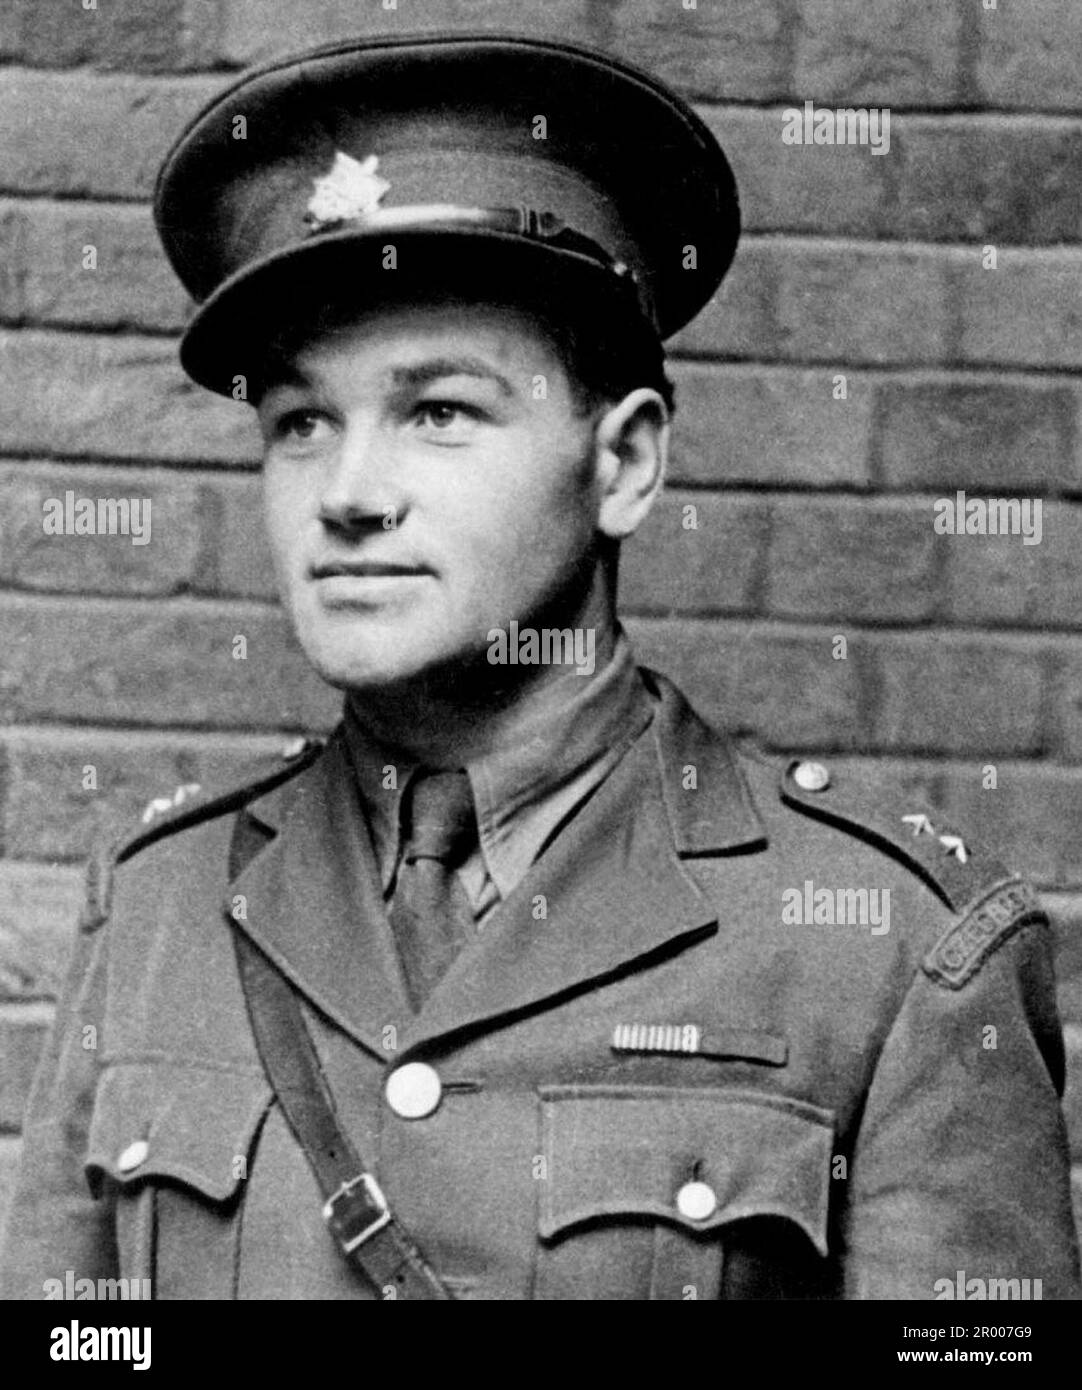 Jan Kubiš, einer der Attentäter von Reinhard Heydrich, im Vereinigten Königreich während seiner Ausbildung für seine Rolle bei der Operation Anthropoid. Stockfoto